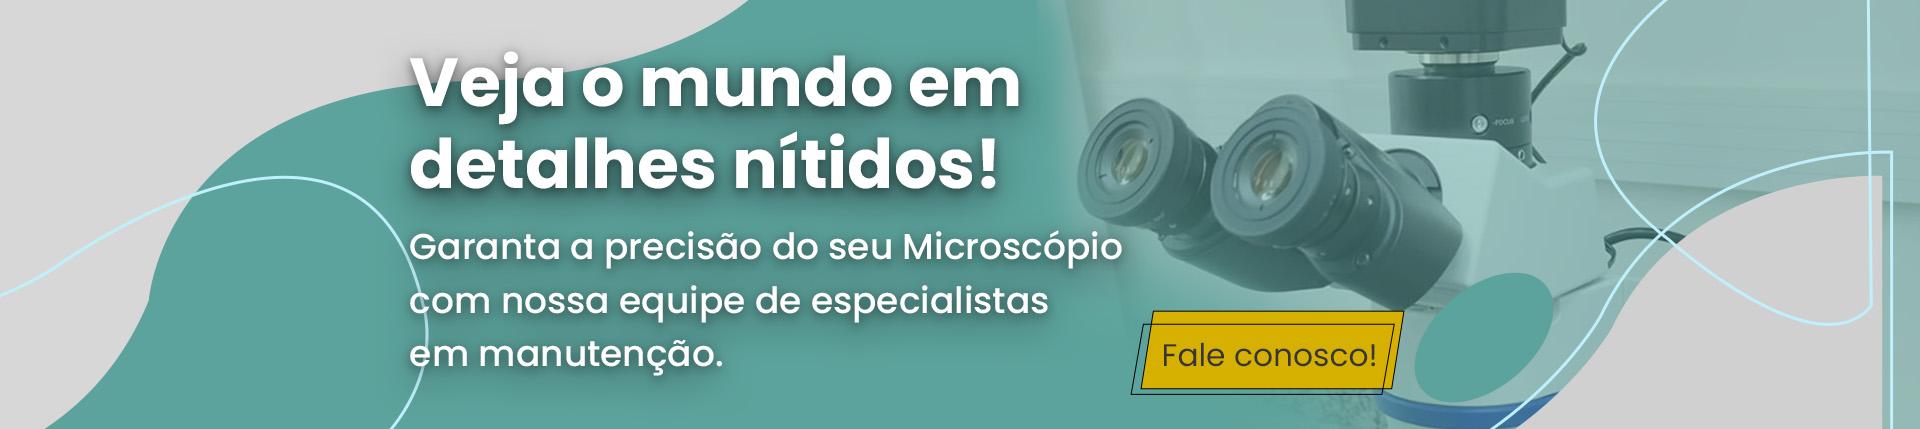 banner-servicos-microscopios